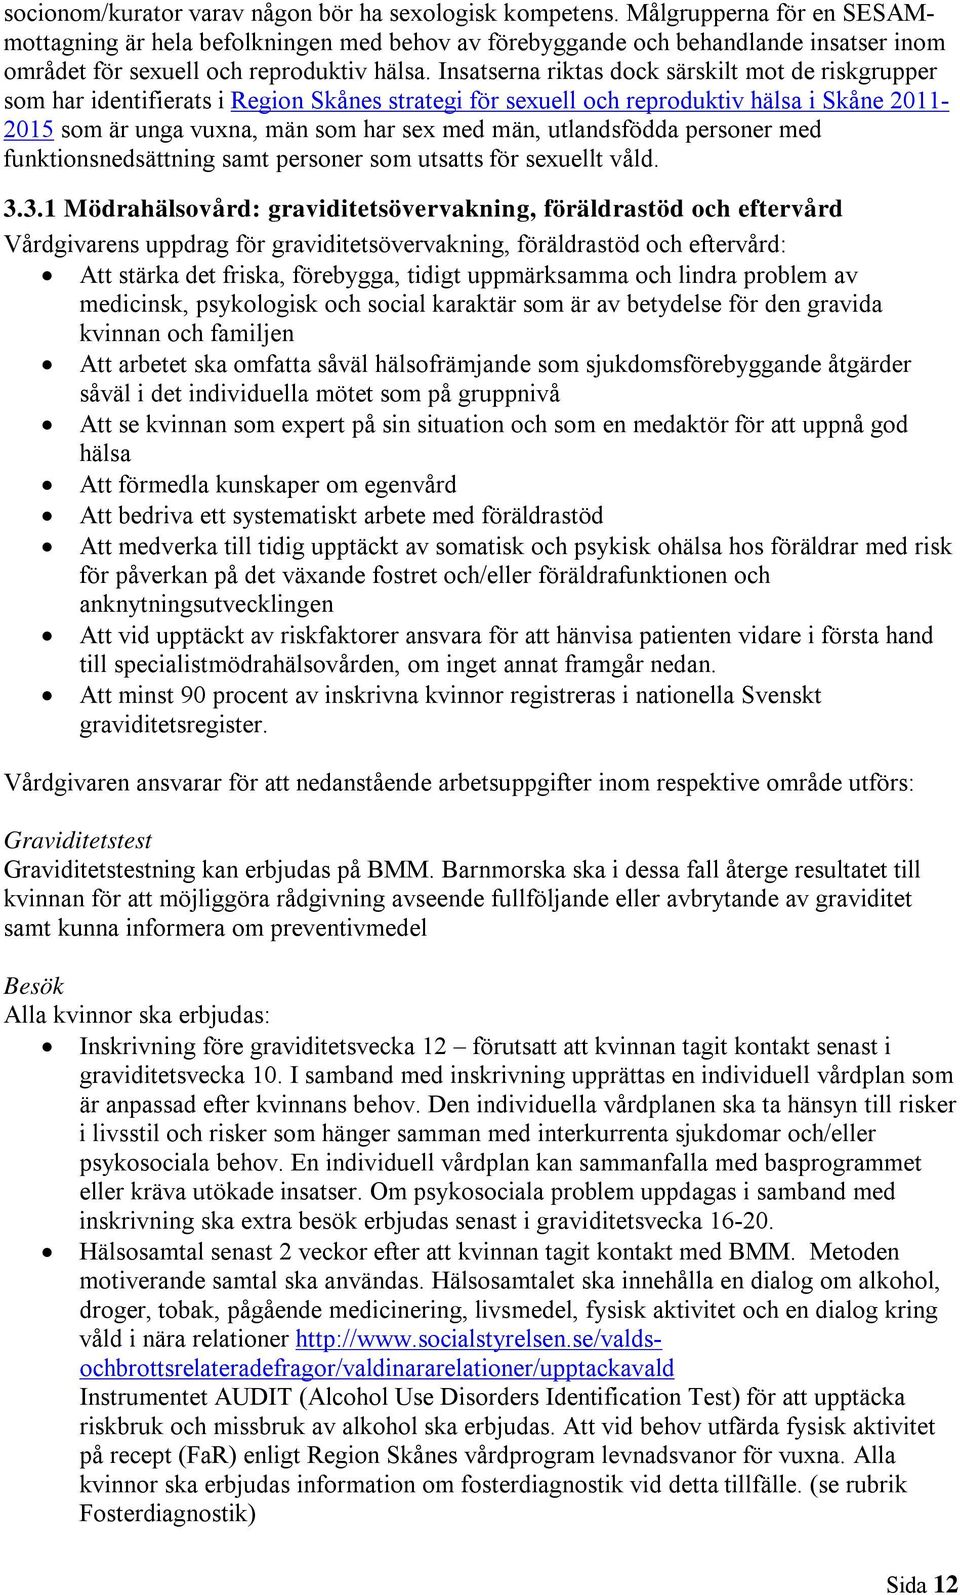 Insatserna riktas dock särskilt mot de riskgrupper som har identifierats i Region Skånes strategi för sexuell och reproduktiv hälsa i Skåne 2011-2015 som är unga vuxna, män som har sex med män,